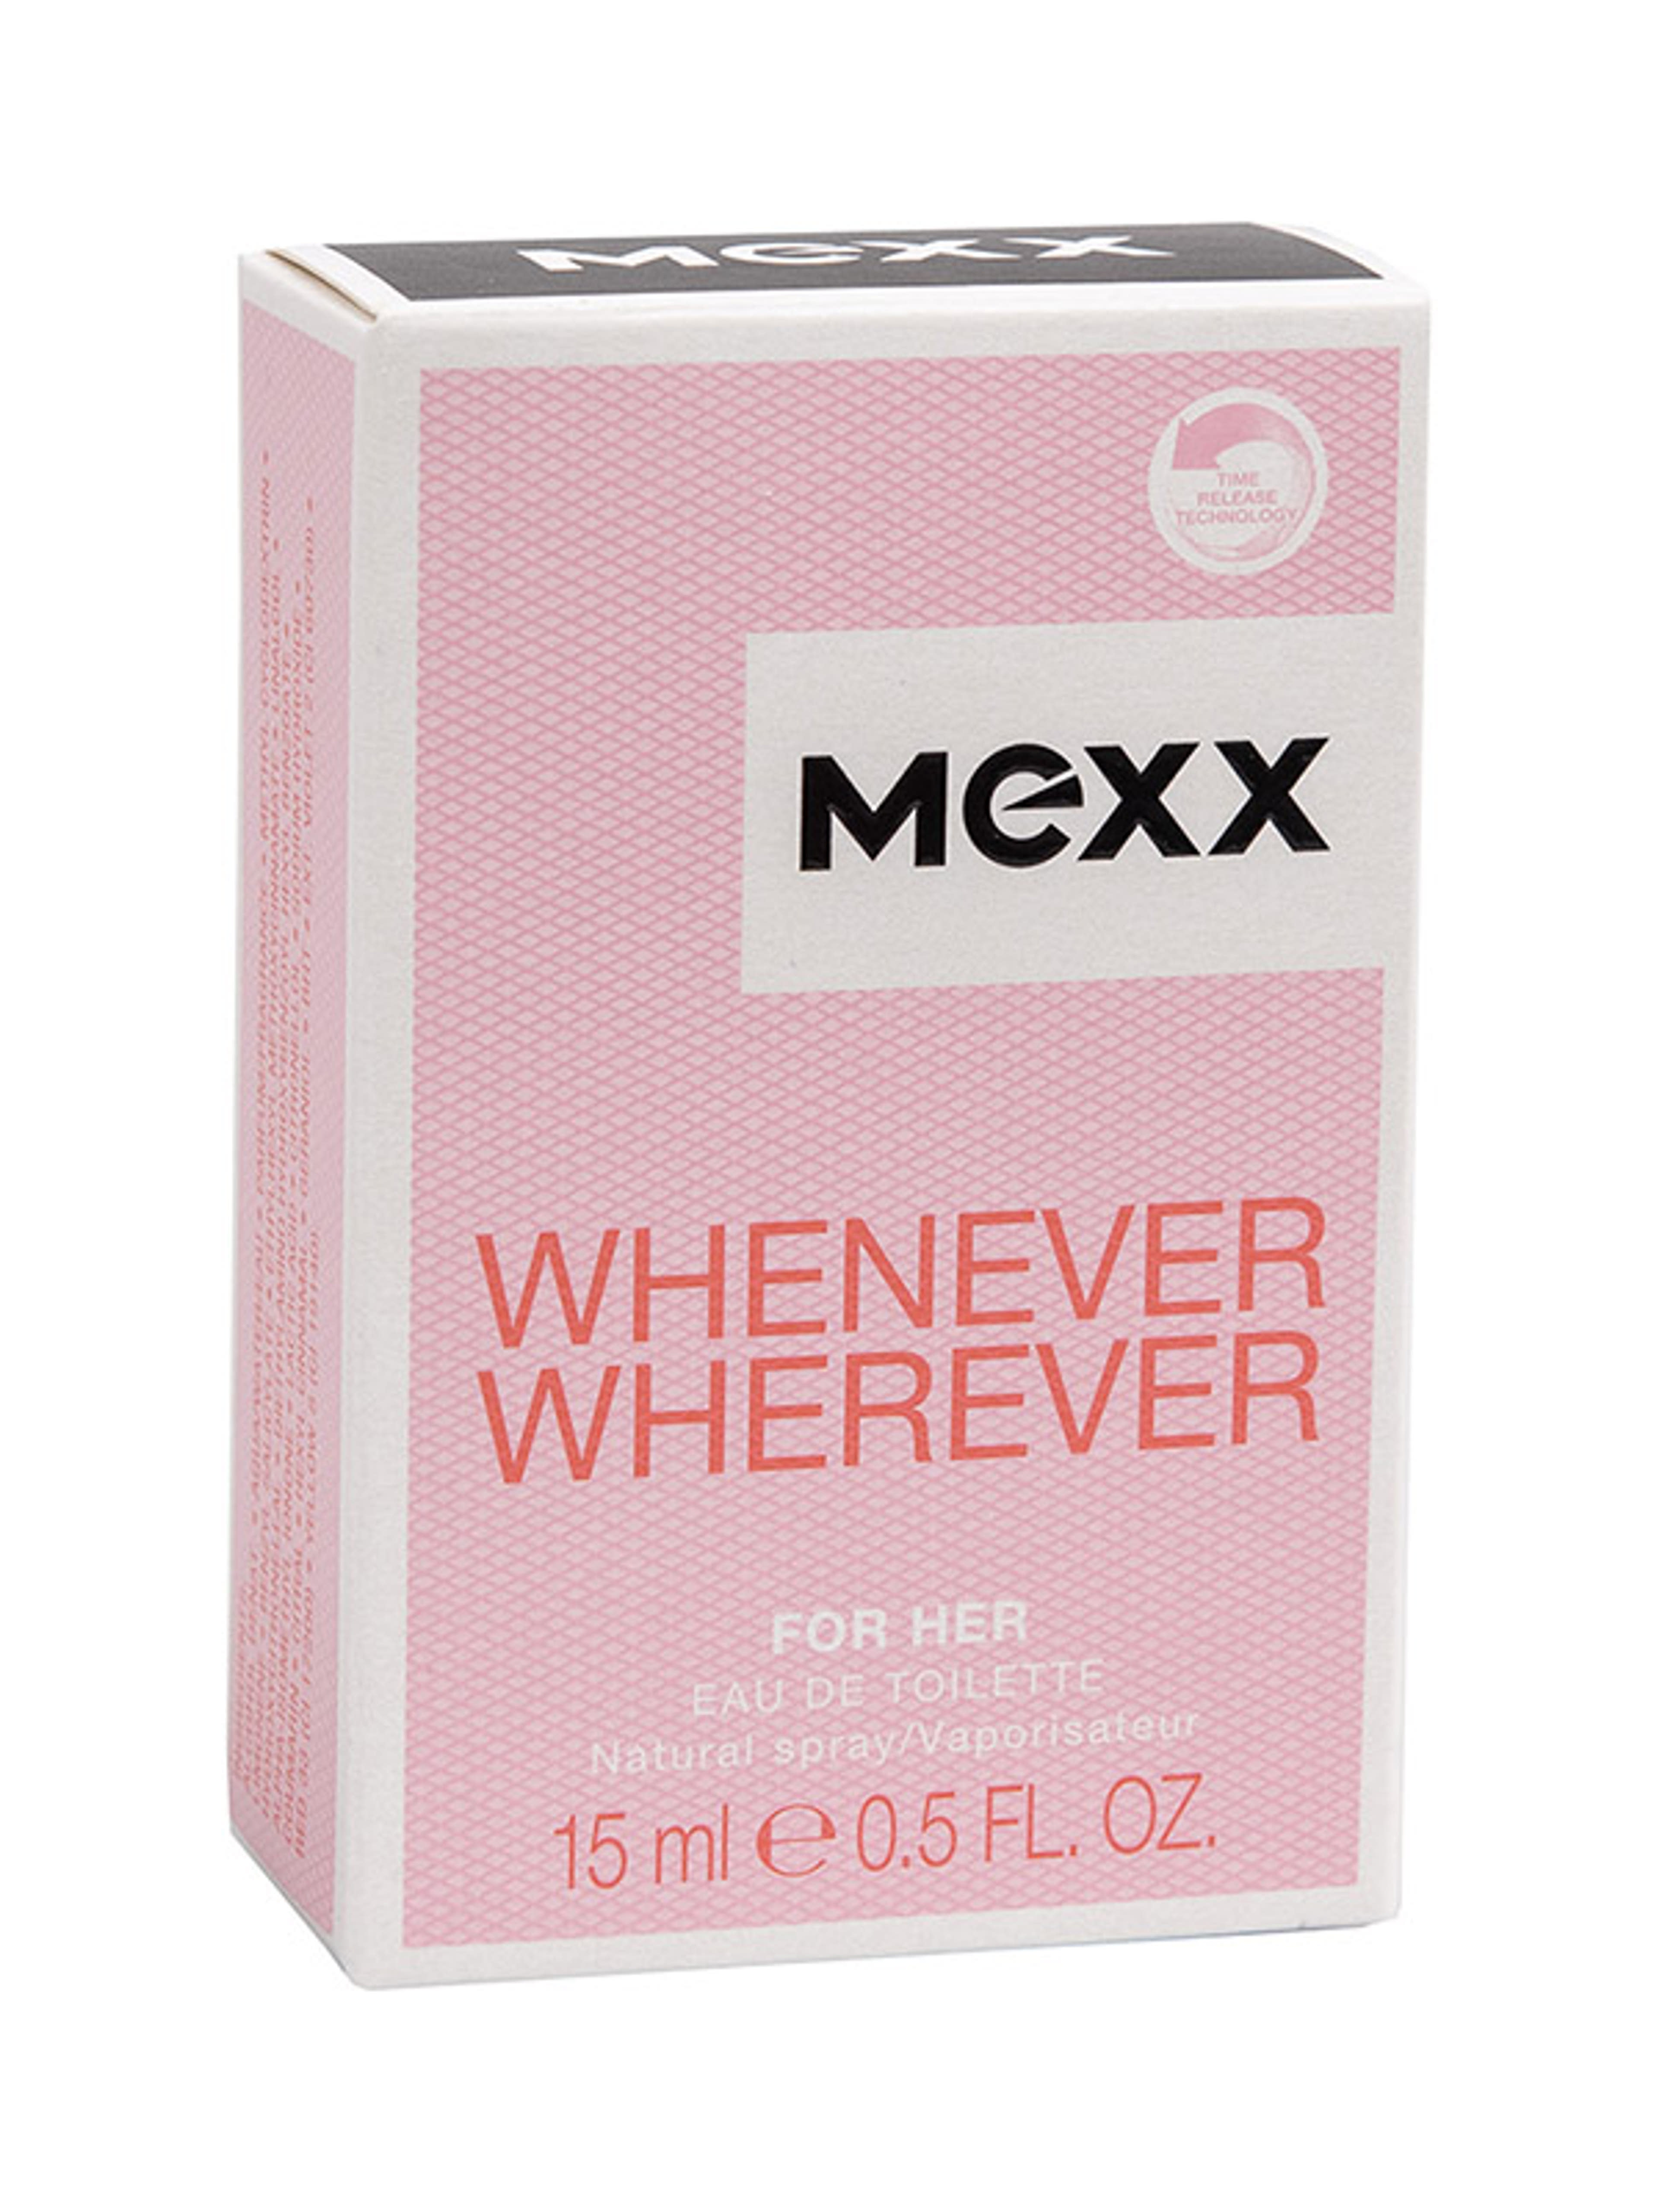 Mexx Whenever Wherever női Eau de Toilette - 15 ml